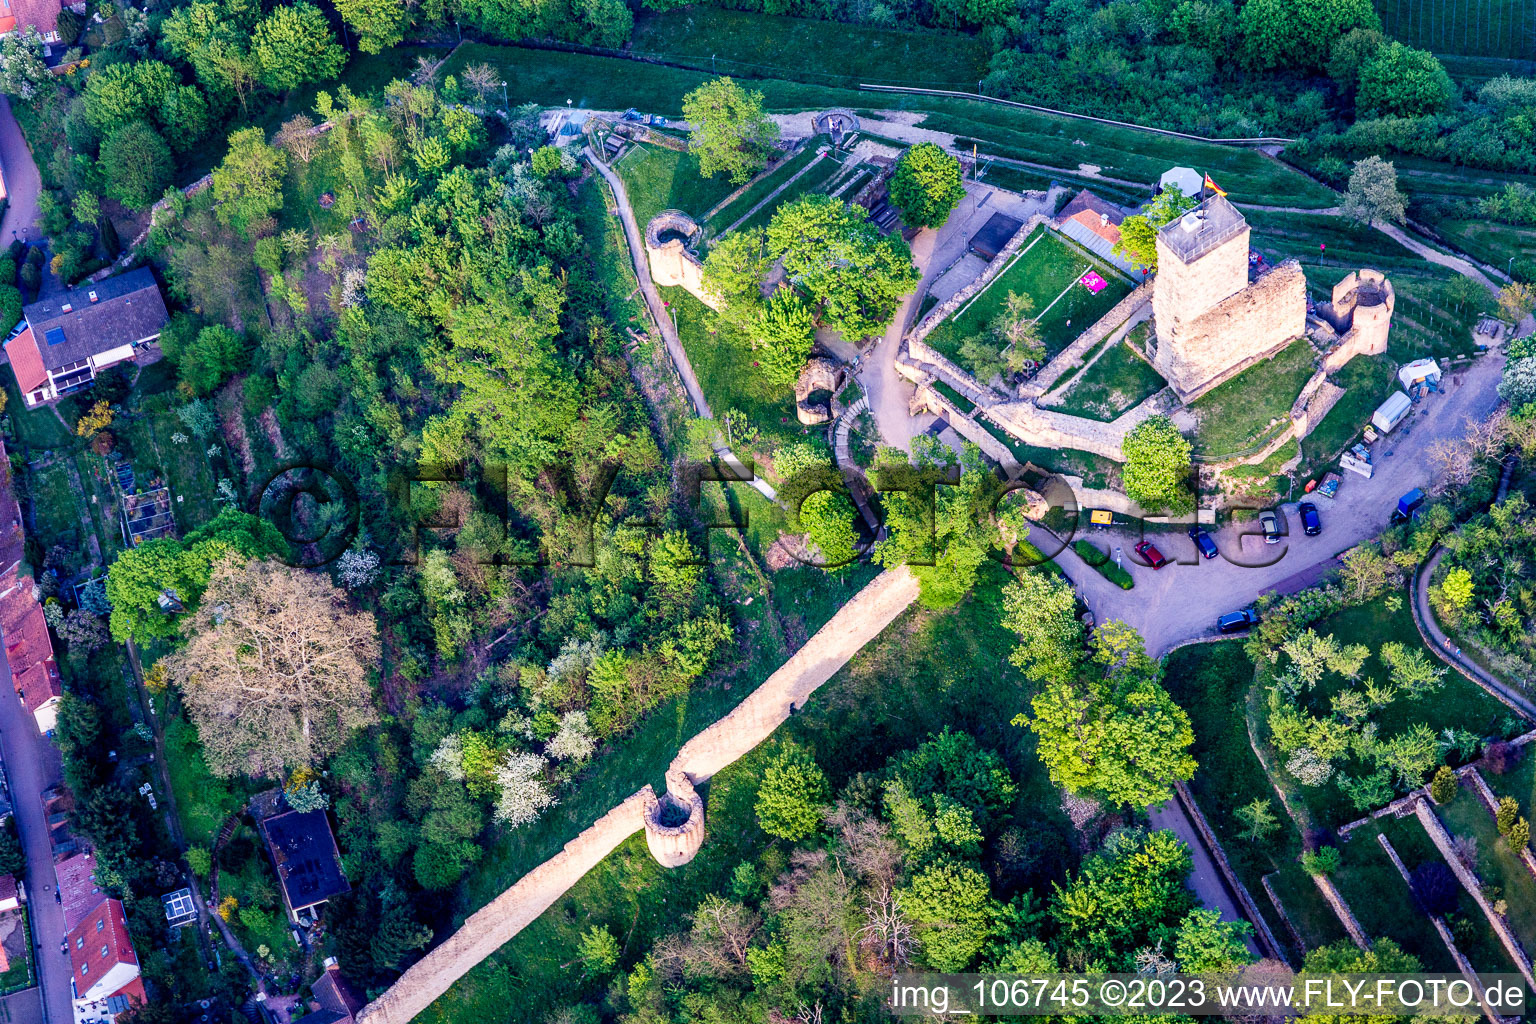 Wachtenburg (ruin “Wachenheim Castle”) in Wachenheim an der Weinstraße in the state Rhineland-Palatinate, Germany from above